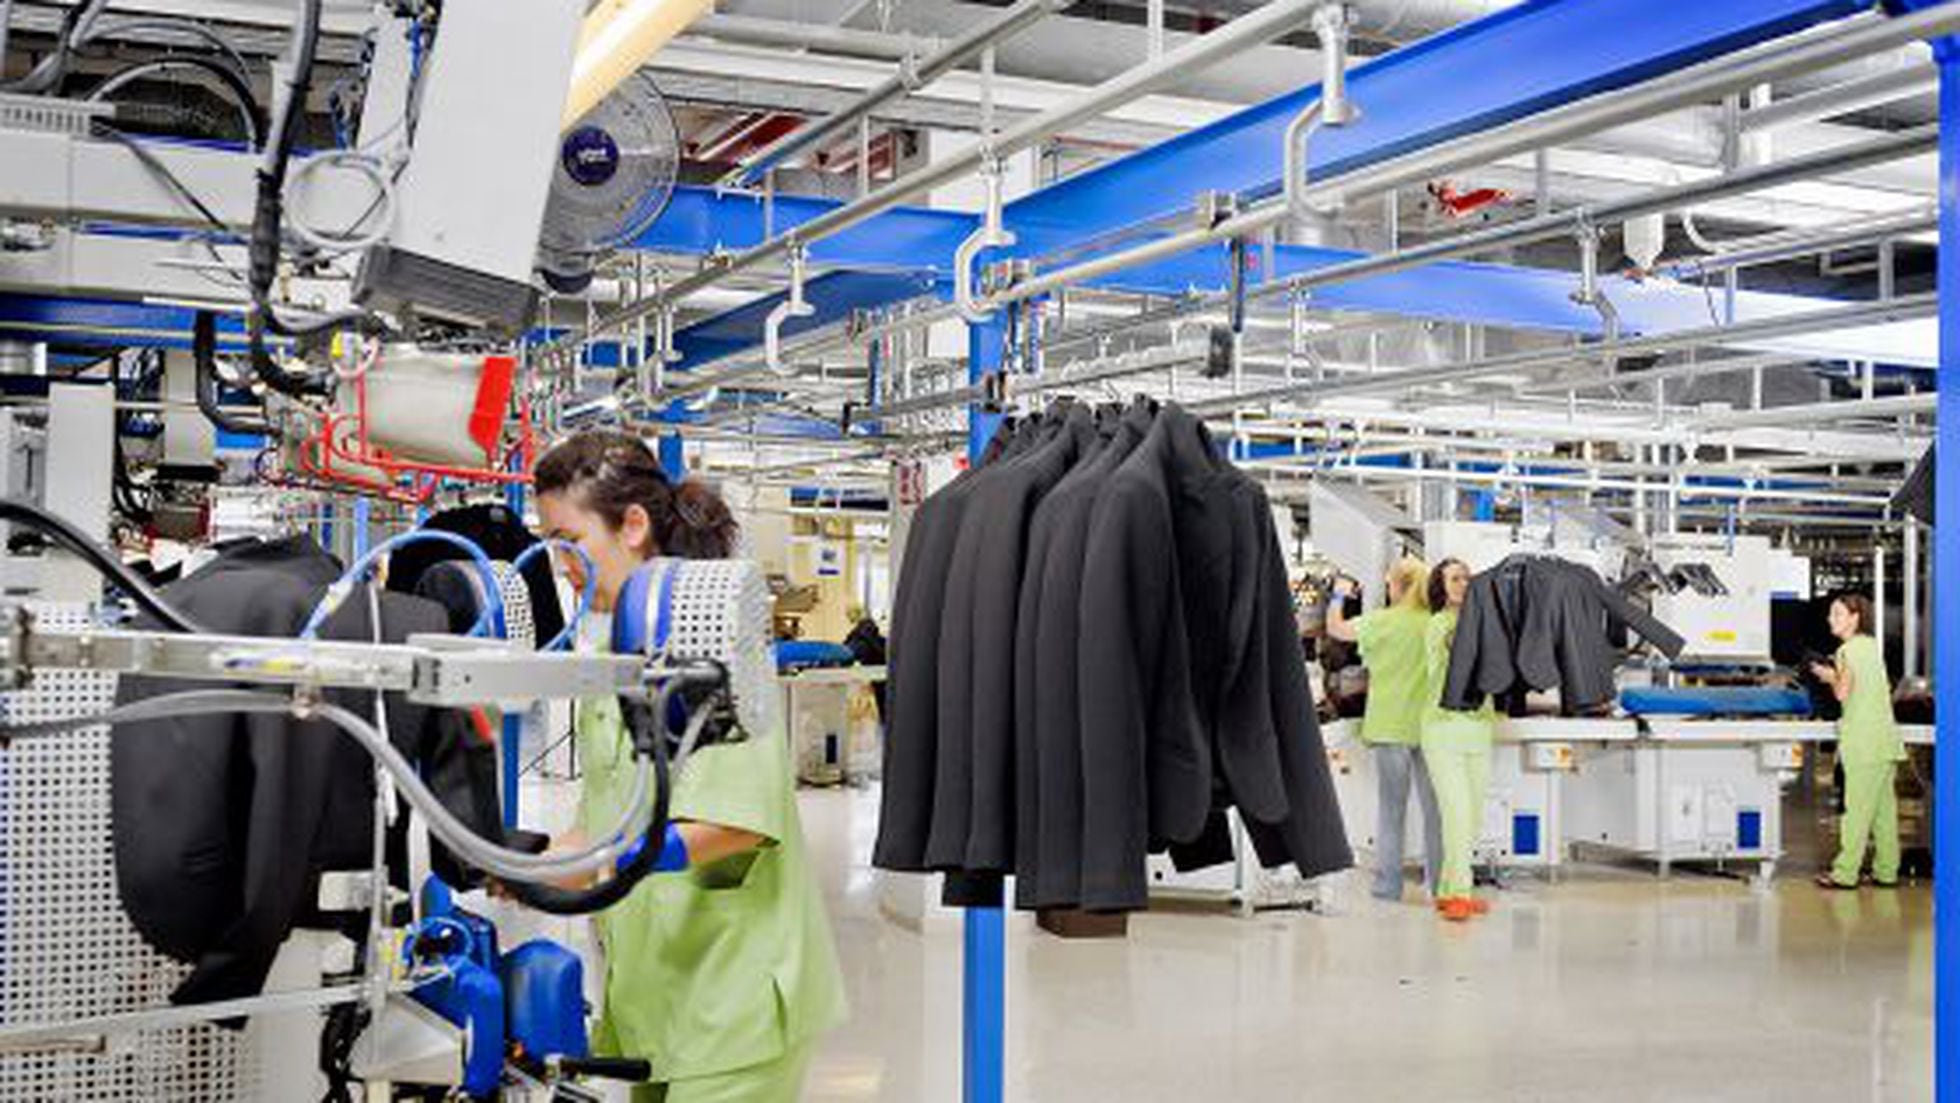 Nueve cosas que han hecho de la mayor empresa textil del mundo | Economía EL PAÍS